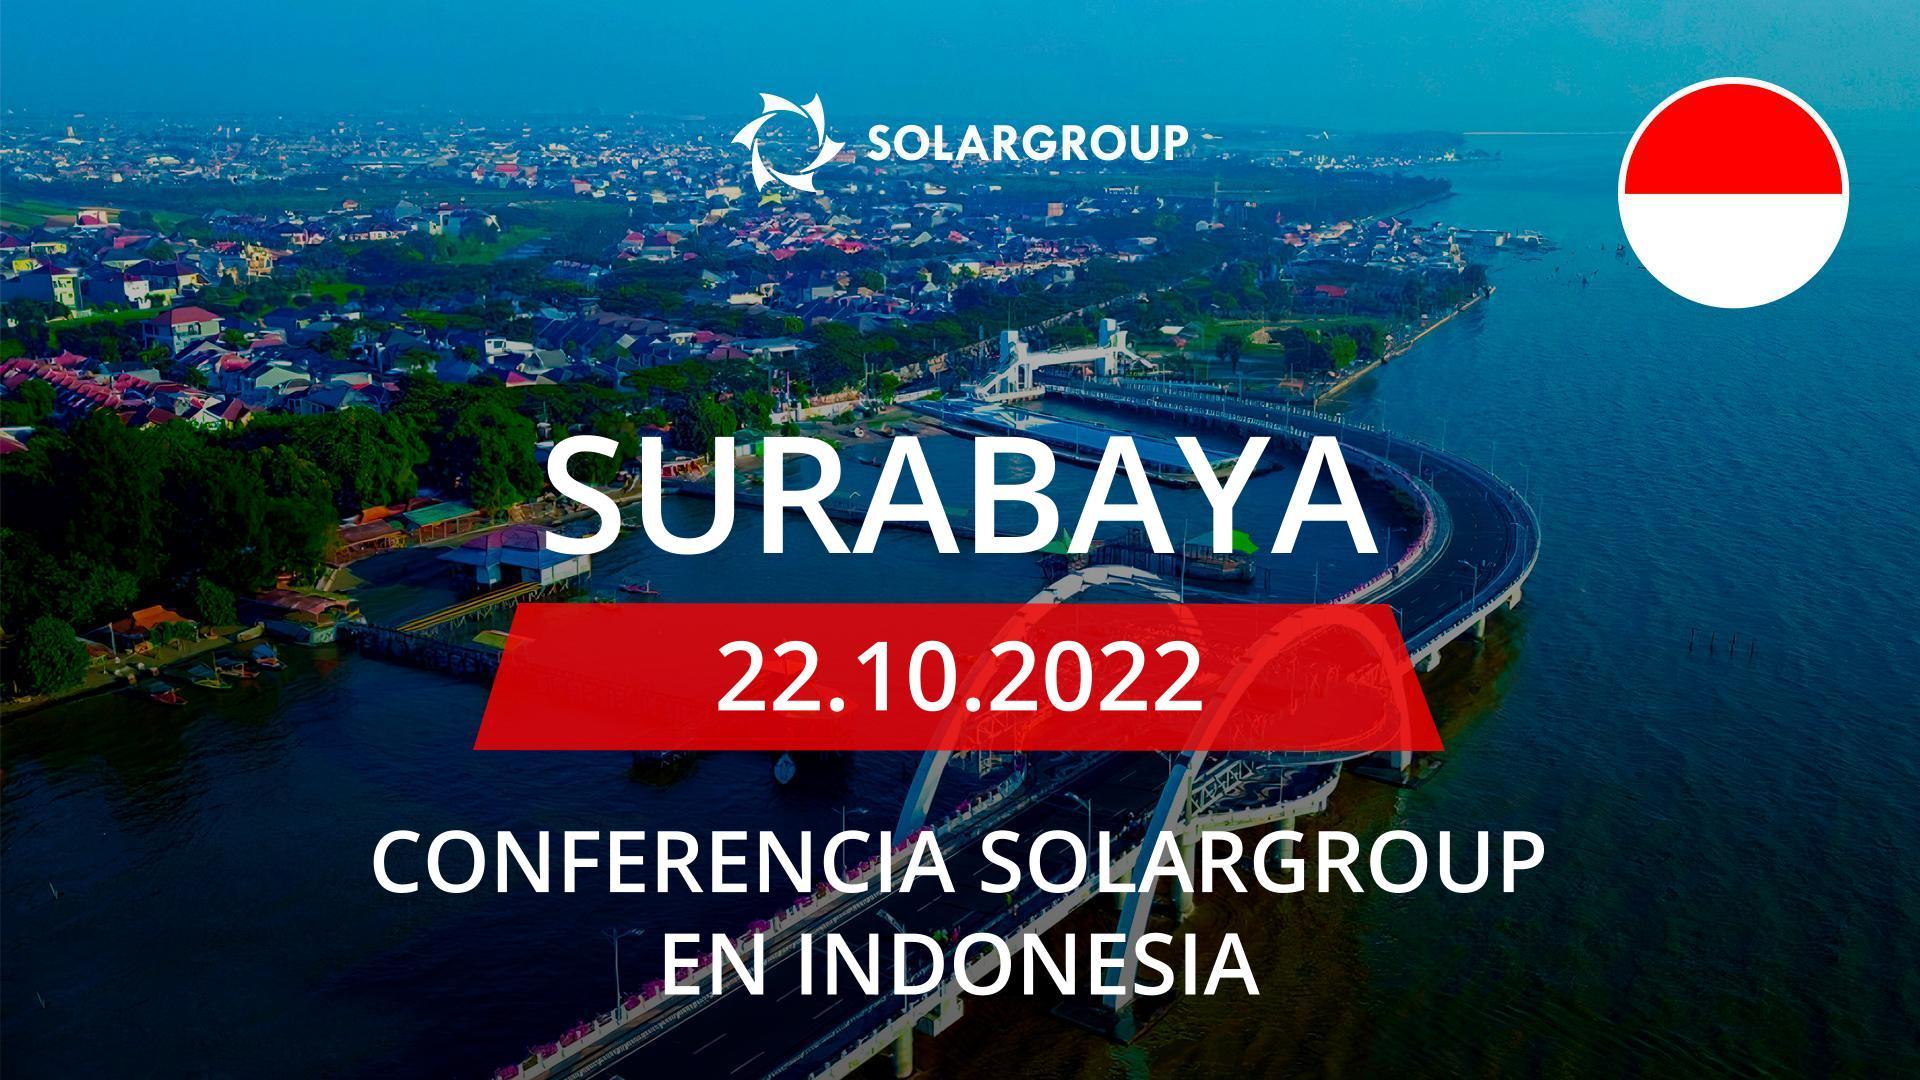 Conferencia de SOLARGROUP en Indonesia: 22 de octubre, Surabaya